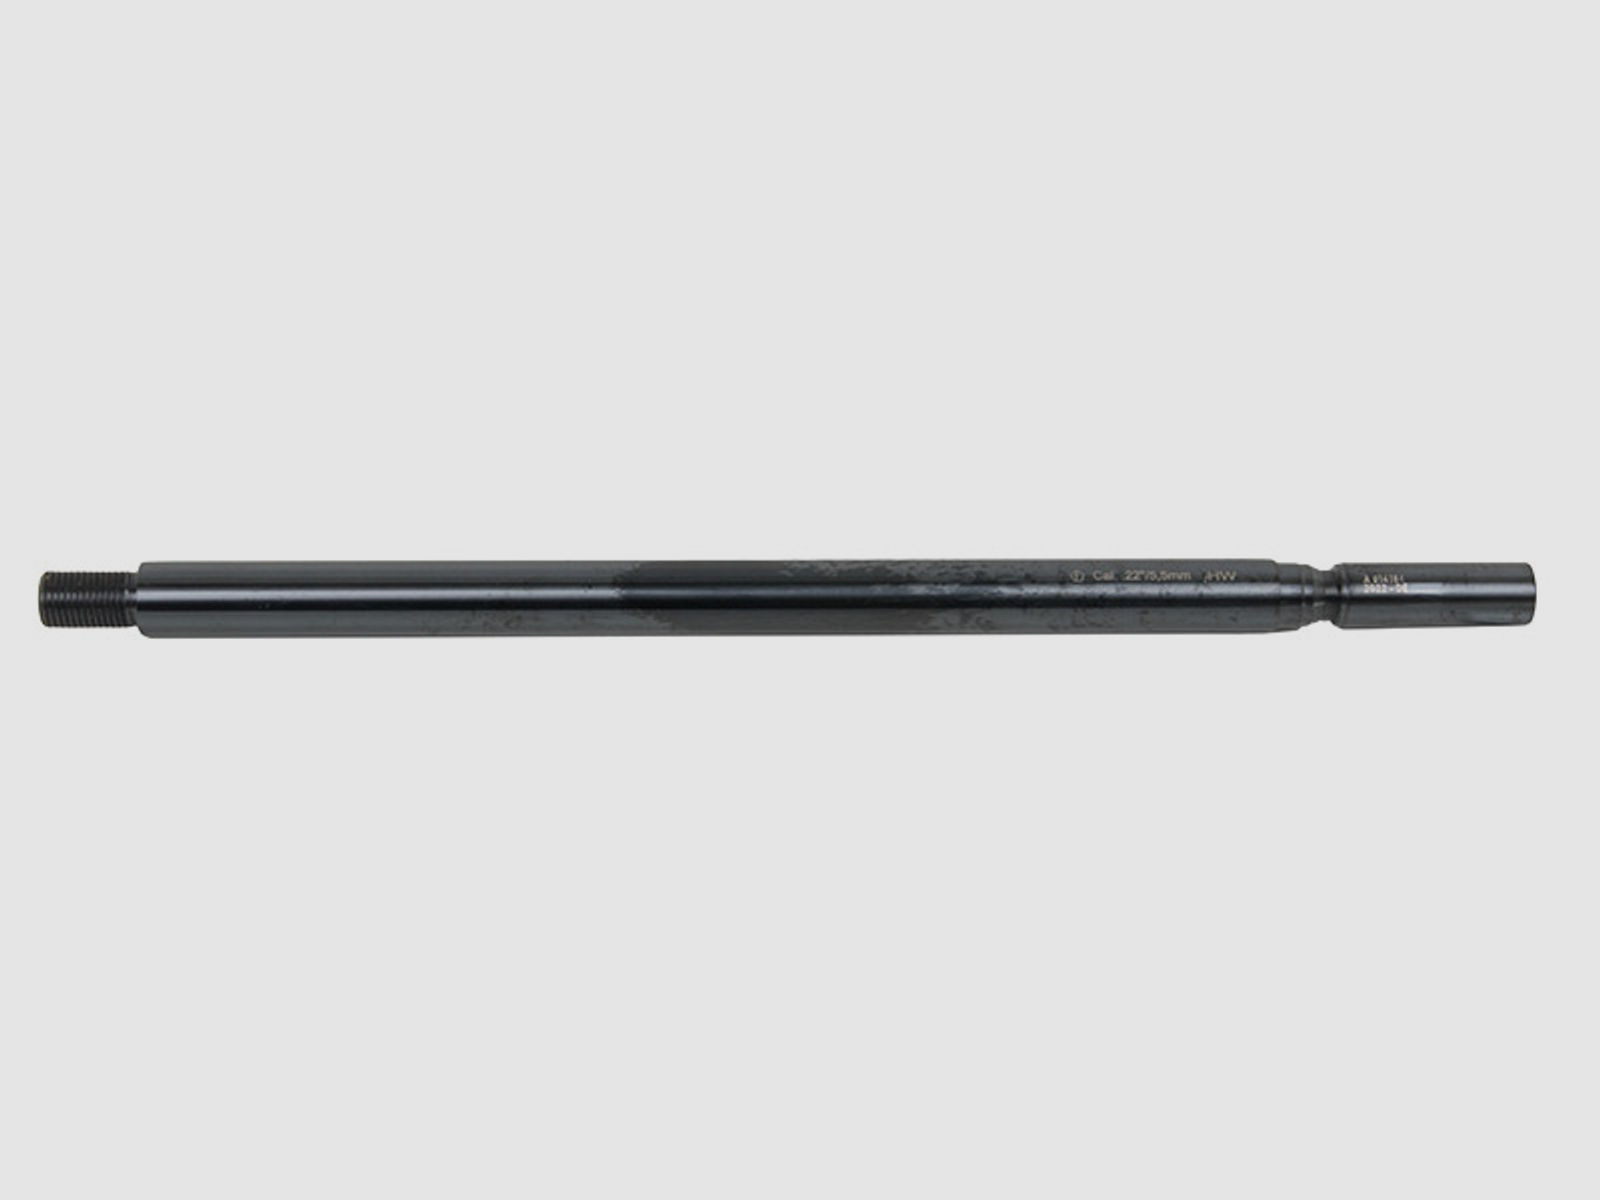 Wechsellauf mit SchalldĂ¤mpfergewinde fĂĽr Pressluftgewehr Weihrauch HW 100 LĂ¤nge 310 mm Kaliber 5,5 mm (P18)